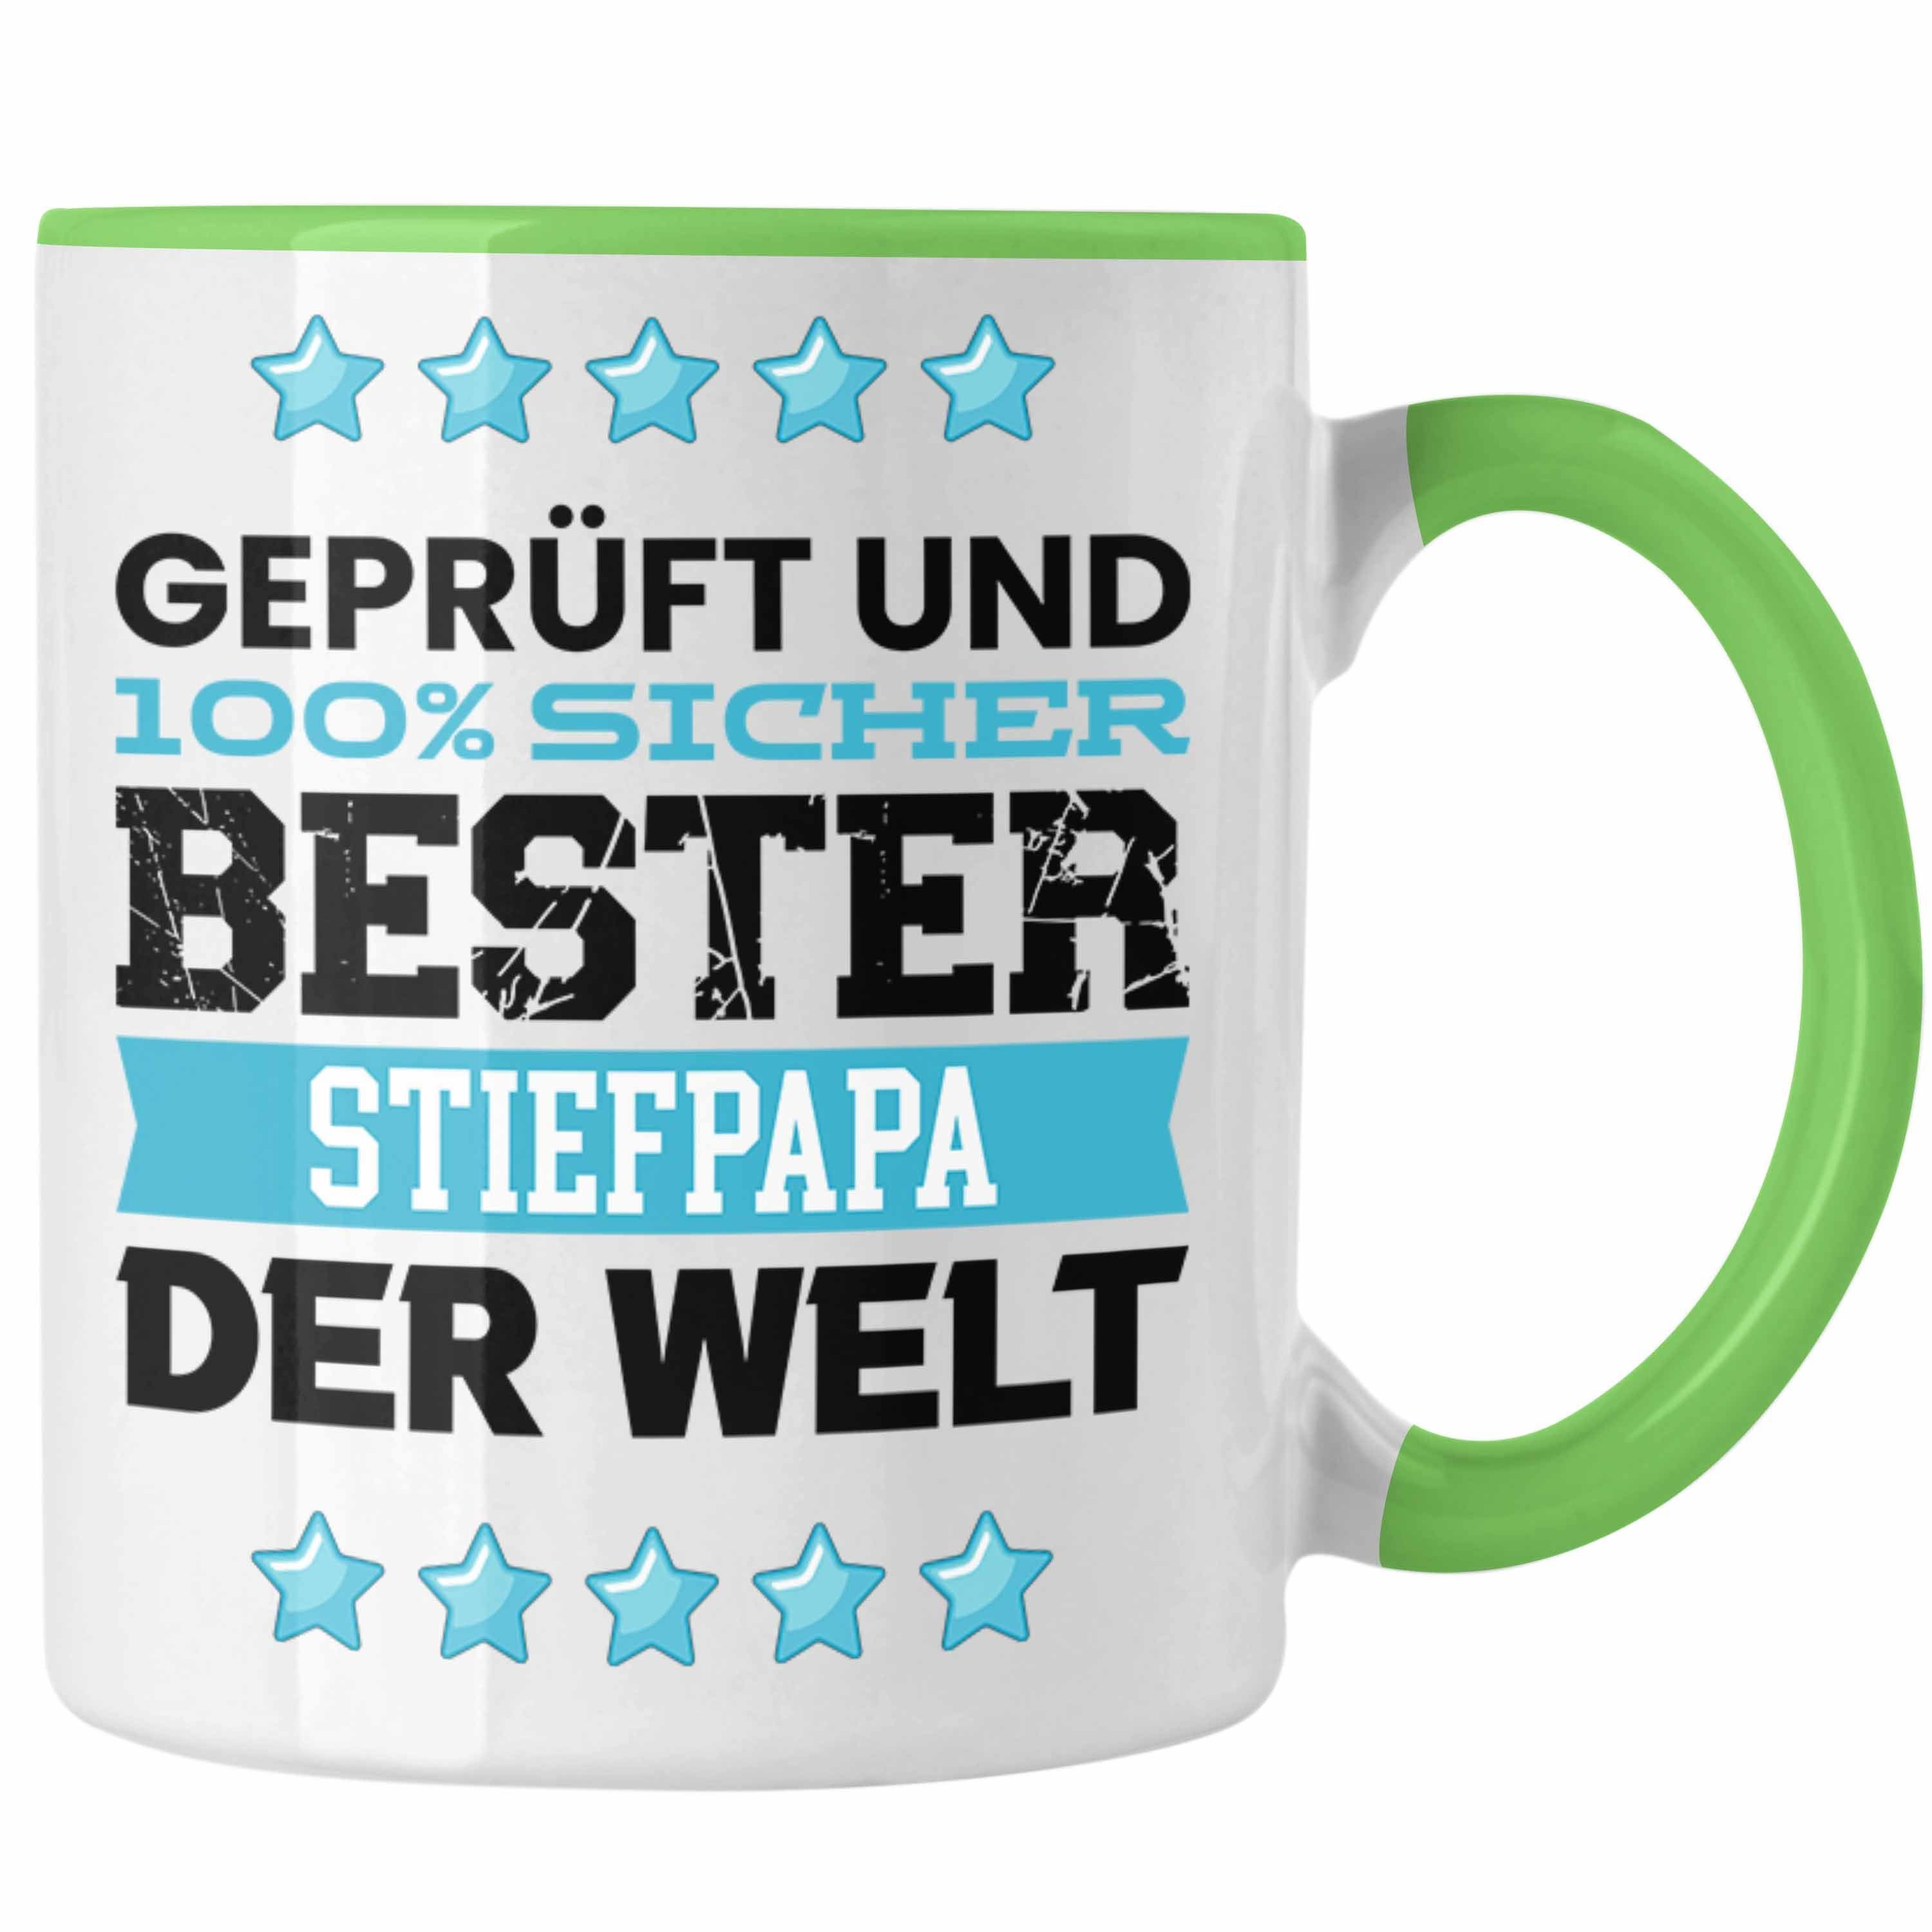 Trendation Grün Welt Der Bester Tasse G Papa Stief - Geschenk Trendation Stiefpapa Tasse für